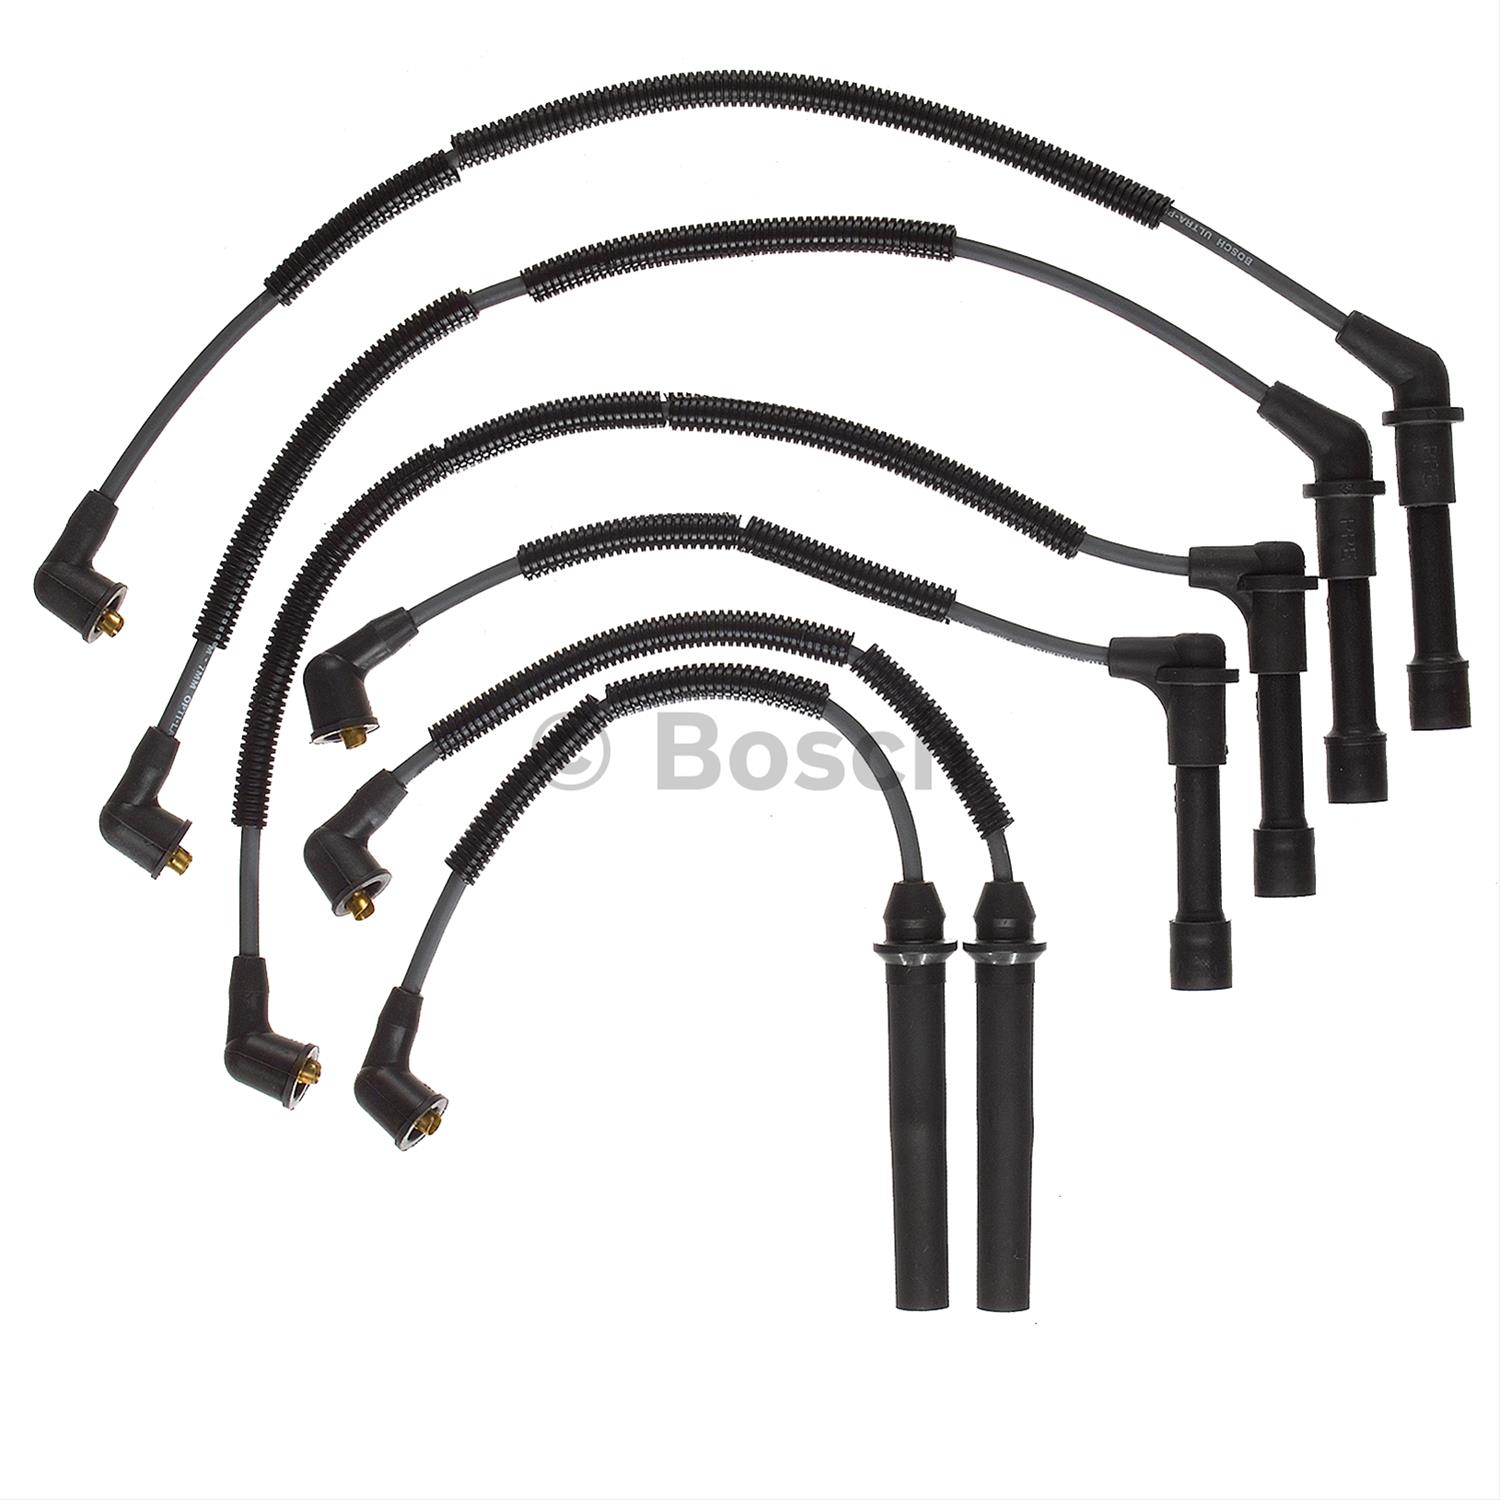 Bosch 09491 Premium Spark Plug Wire Set